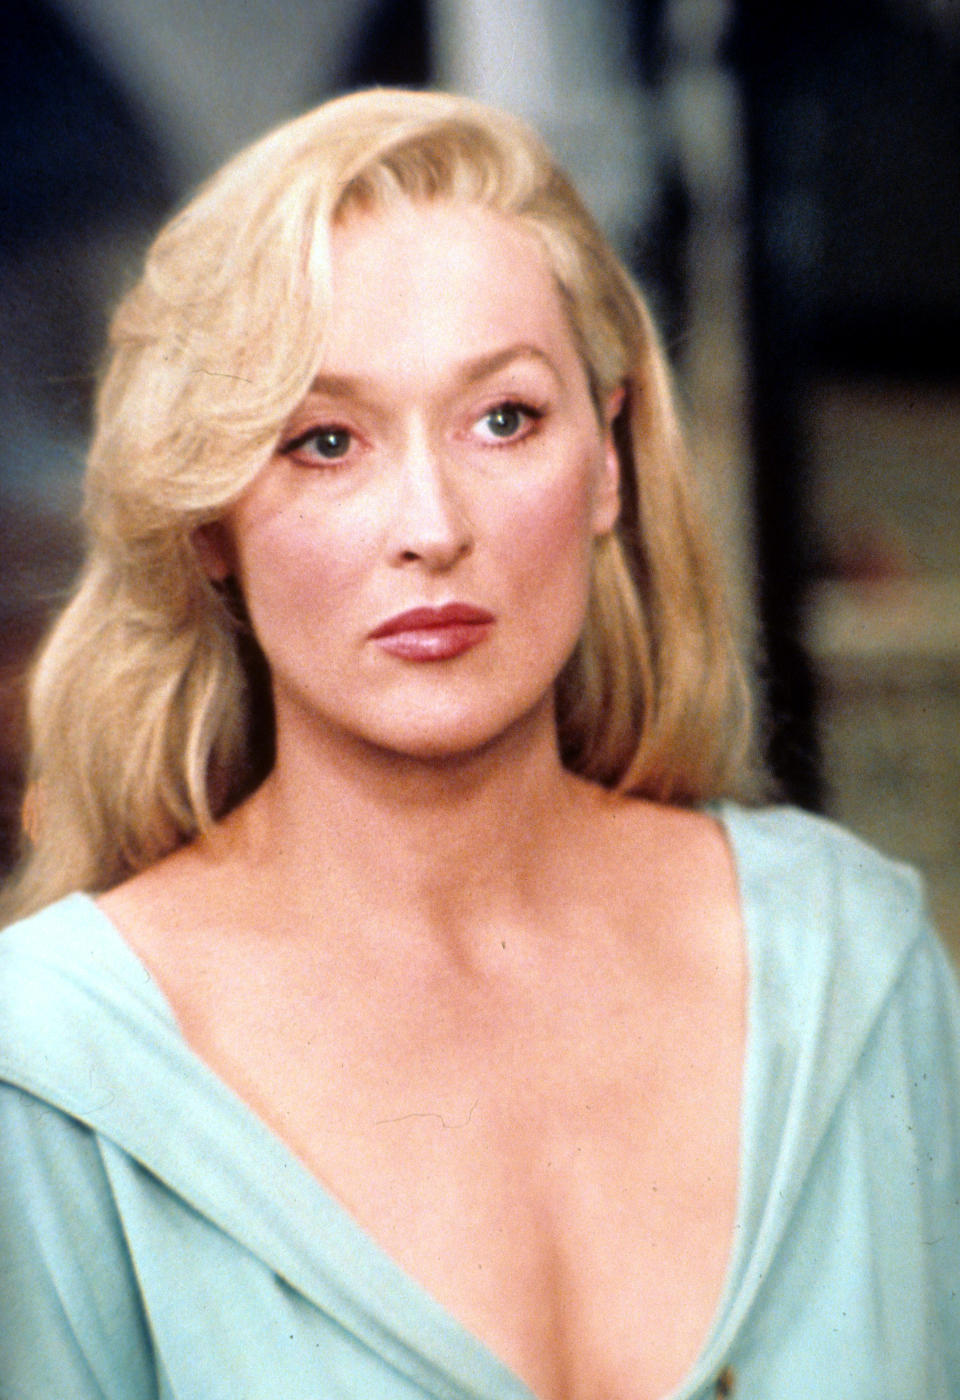 "Mi primera, mi última, mi única", dijo Meryl Streep sobre volver a trabajar con efectos especiales después de 'La muerte le sienta bien' en 1992. (Foto de Universal Pictures/Getty Images)